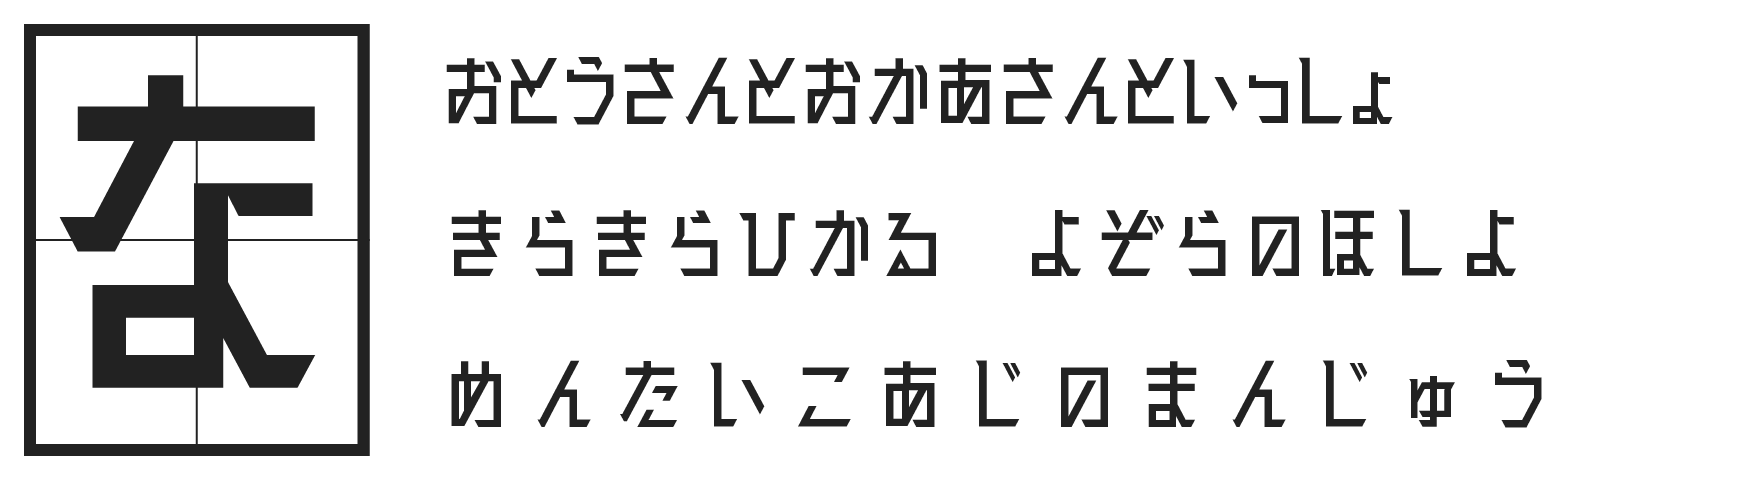 もじワク研究 廻想体 オリジナル日本語フォント